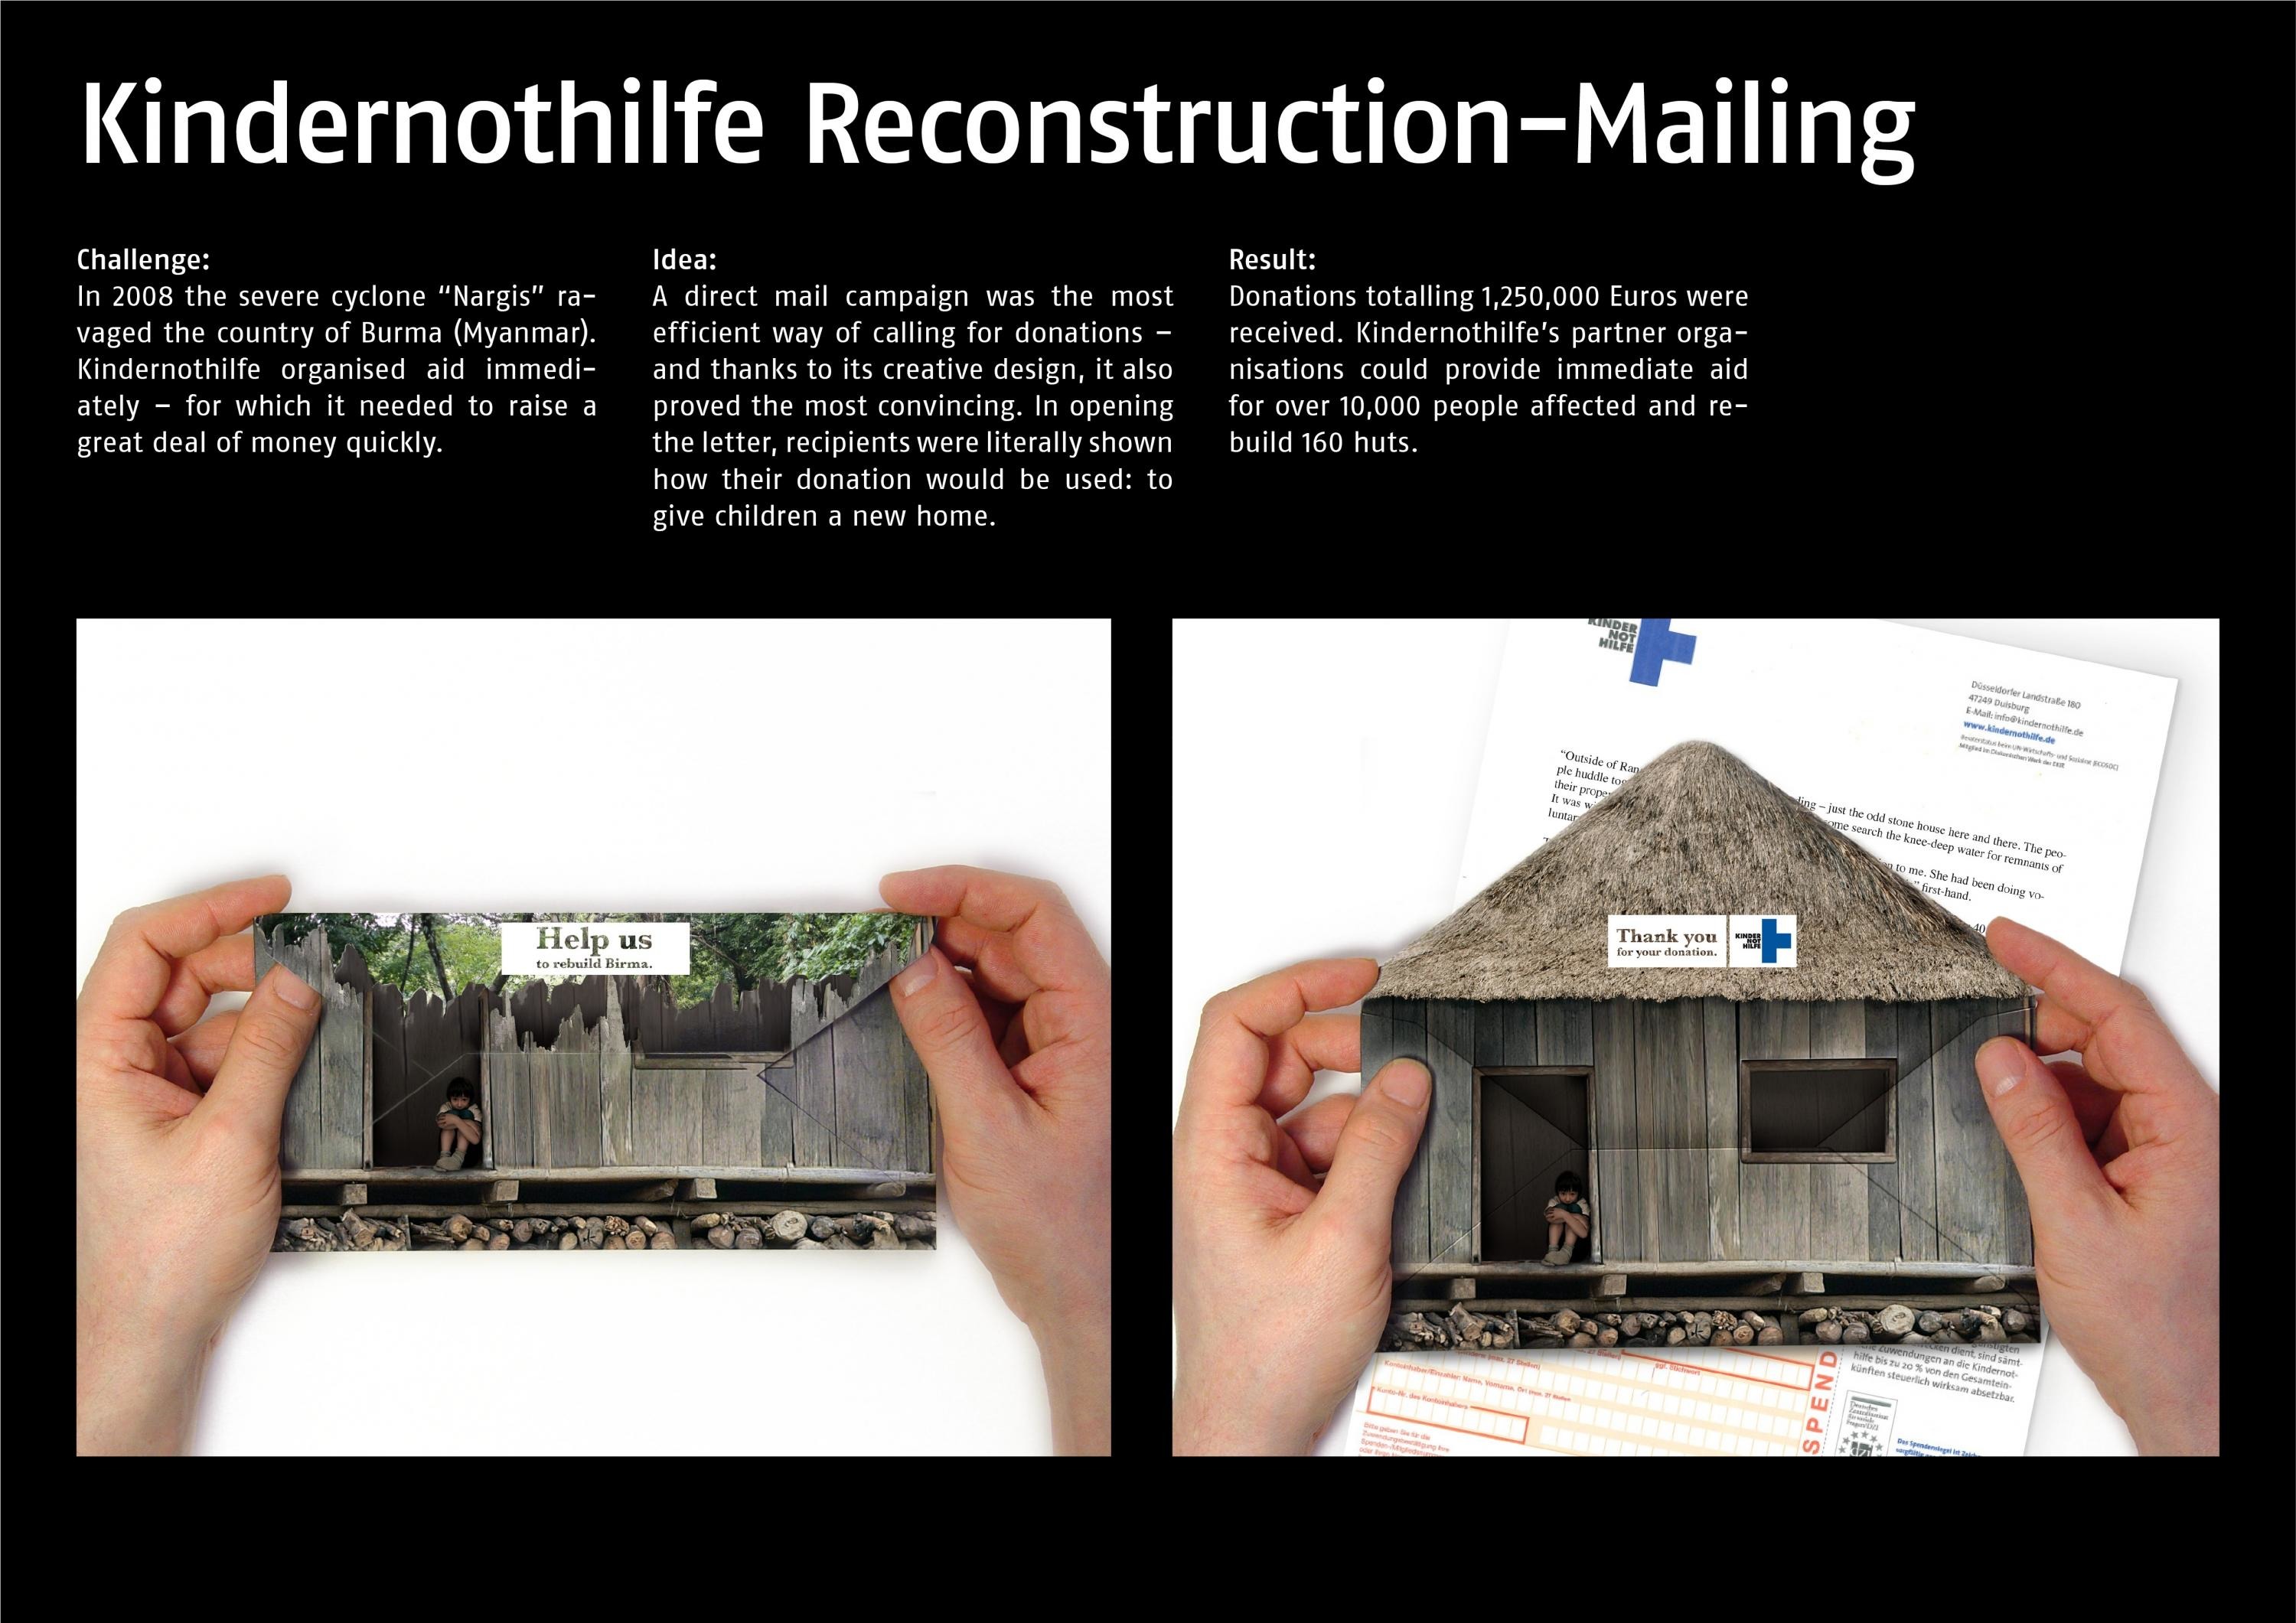 RECONSTRUCTION E.V.